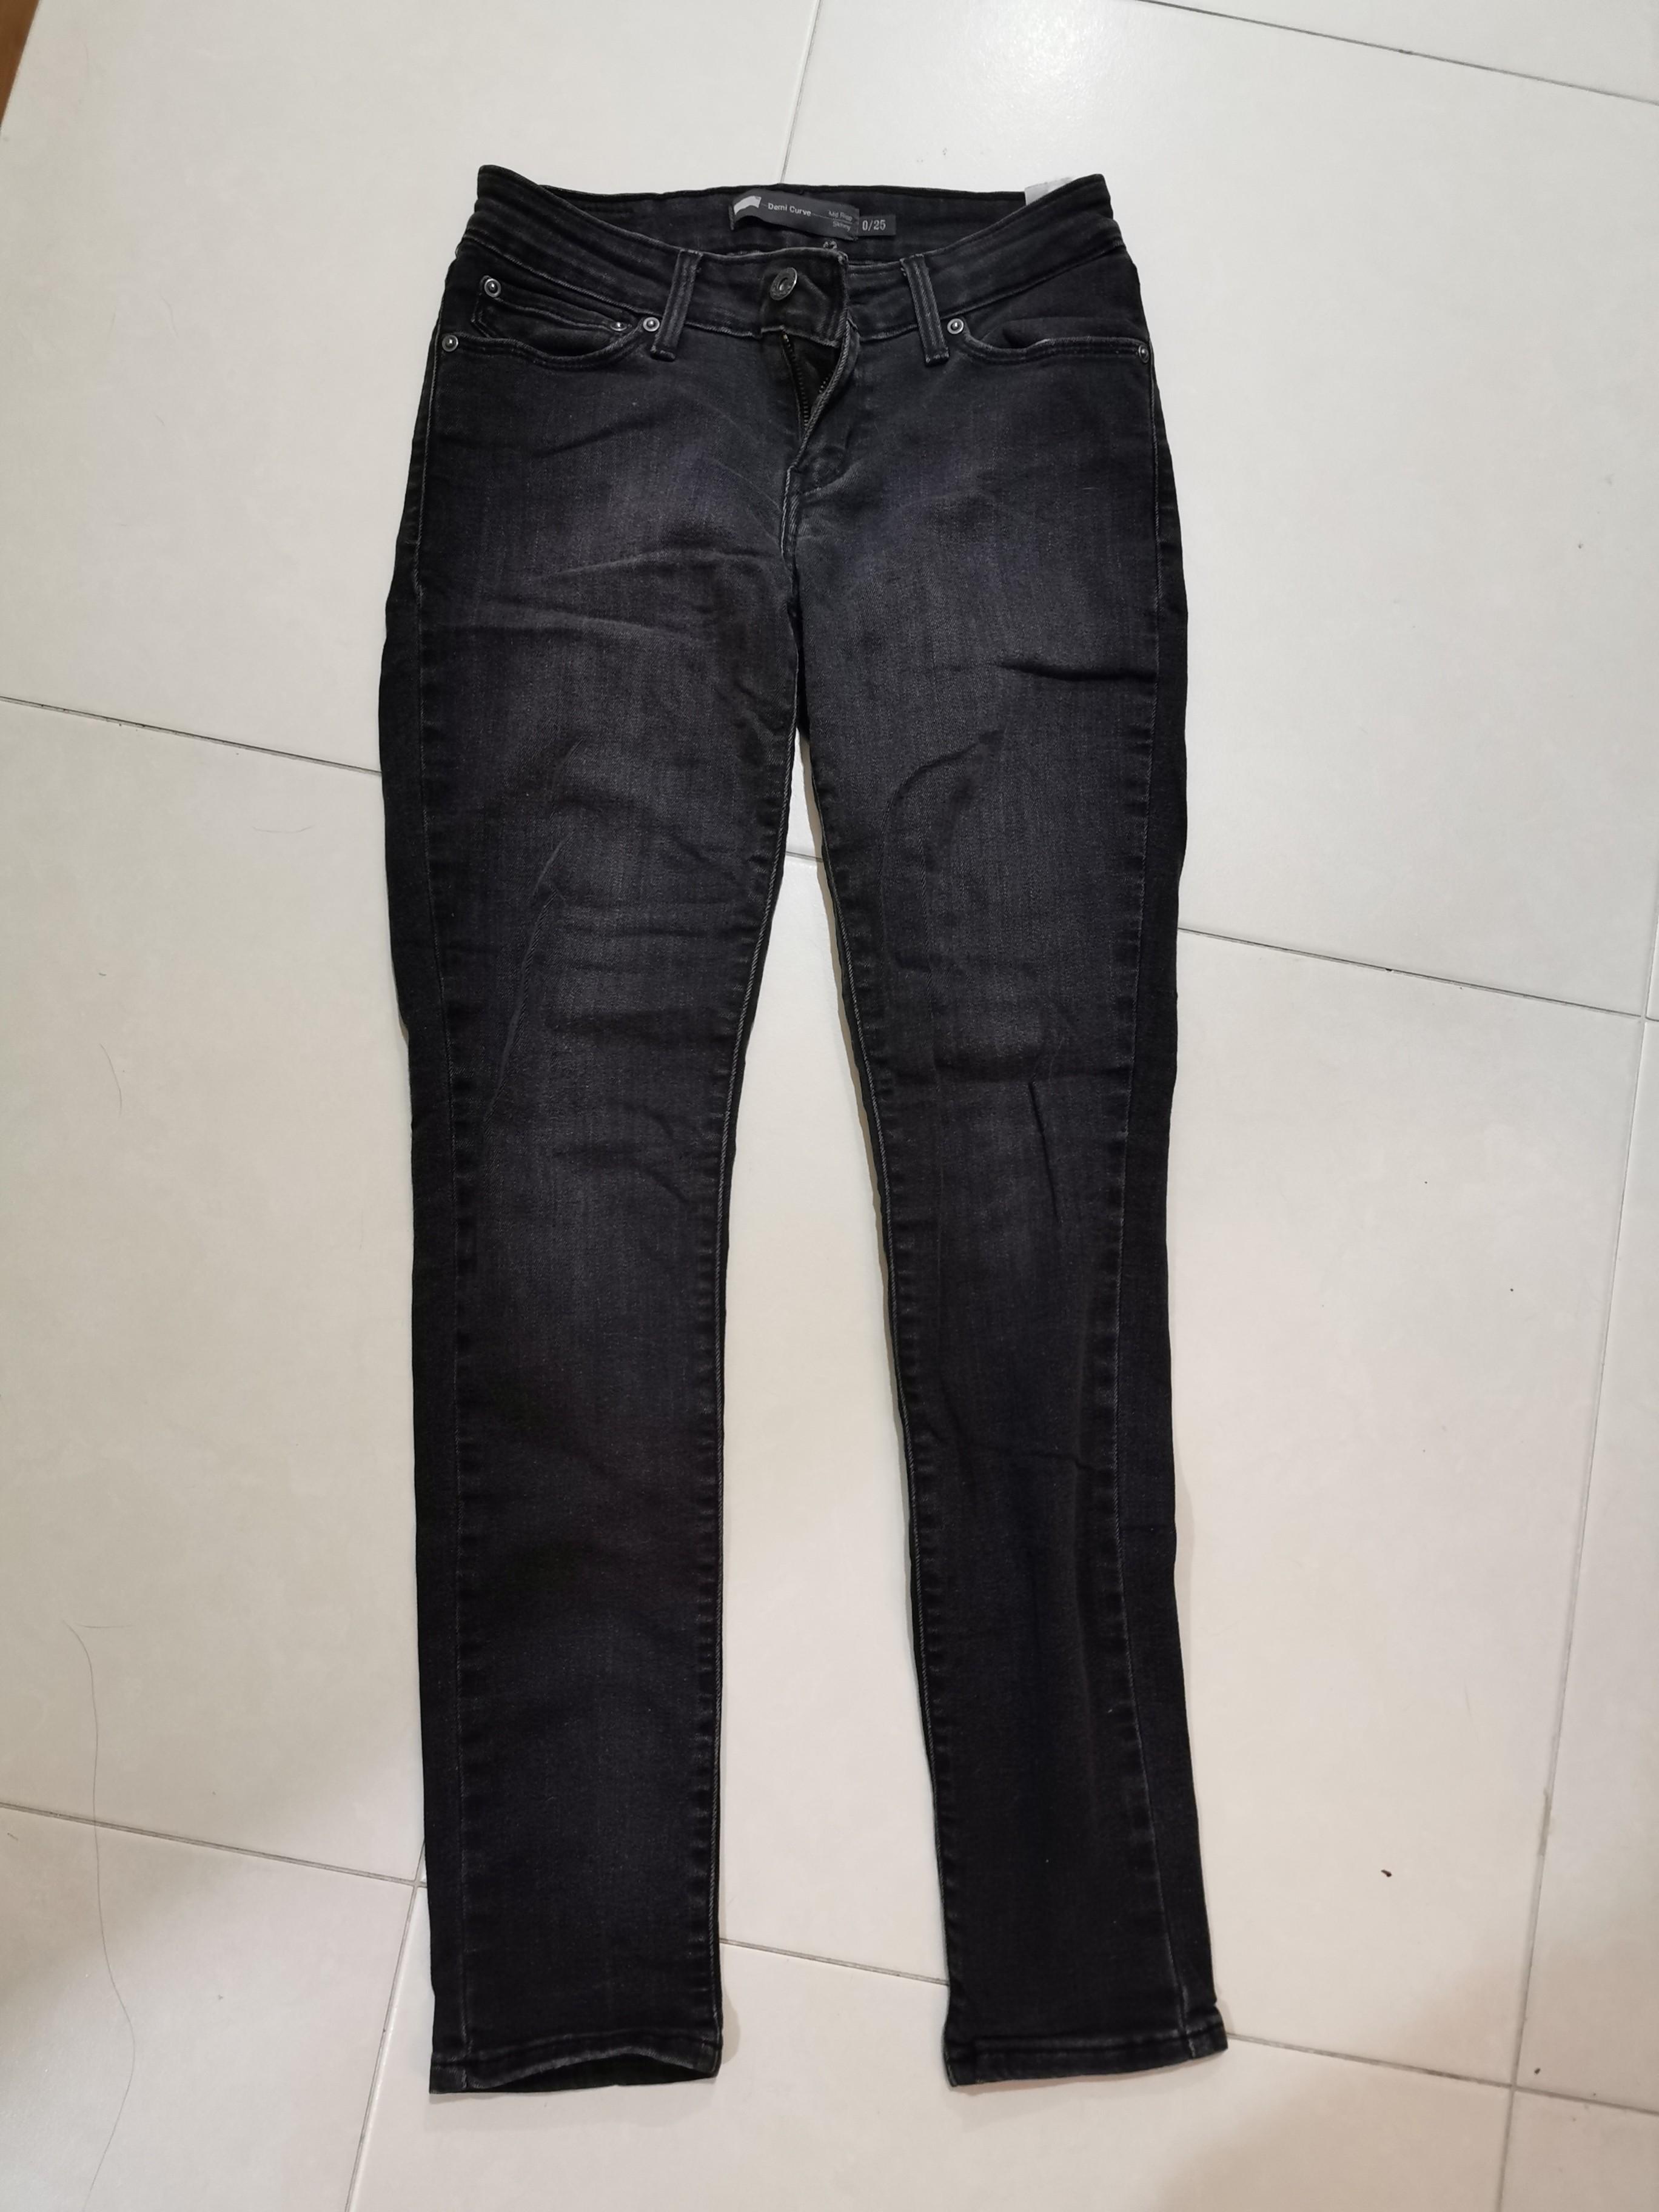 Authentic Levis jeans size 25, Women's 